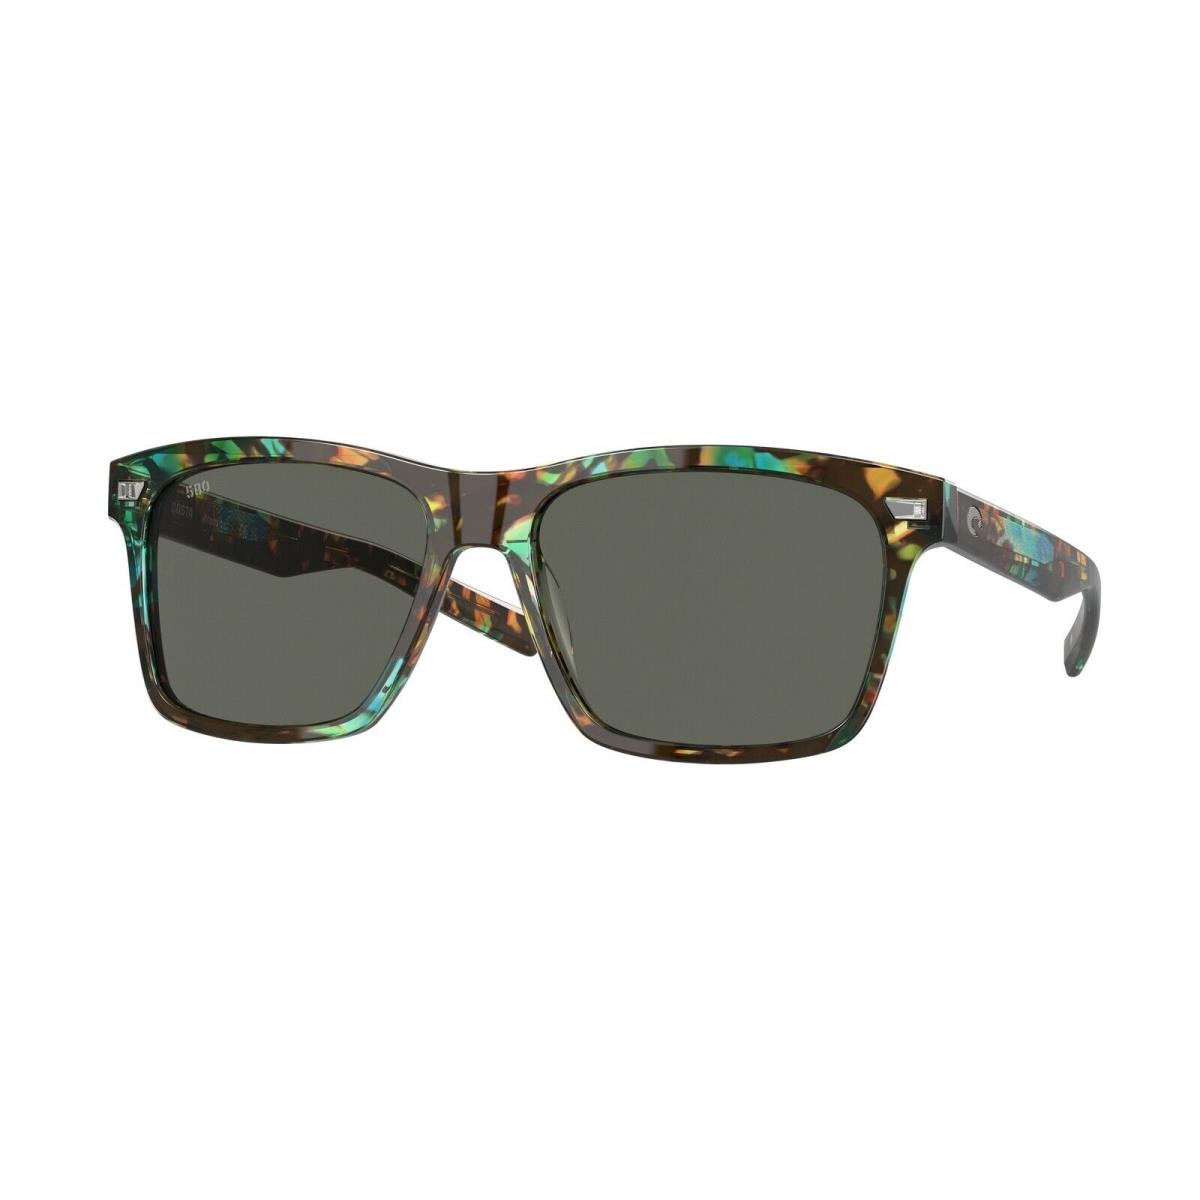 Costa Del Mar Aransas Sunglasses Shiny Ocean Tortoise Frame w/ Gray Glass Lens